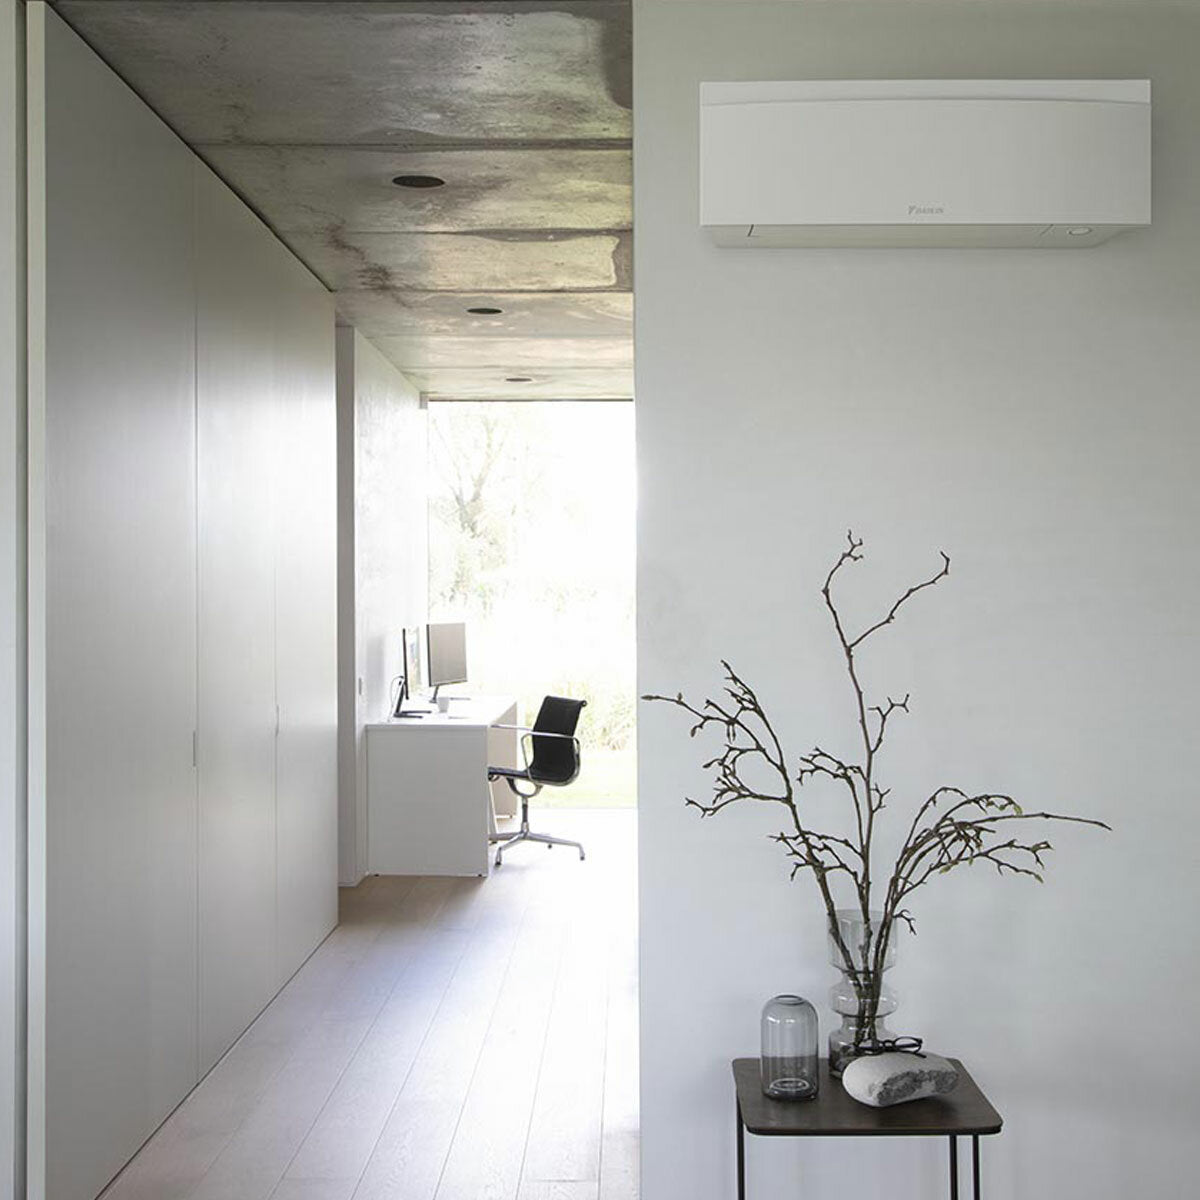 Daikin Emura air conditioner 3 split panels 9000+9000+12000+18000 BTU inverter A++ wifi outdoor unit 7.4 kW White